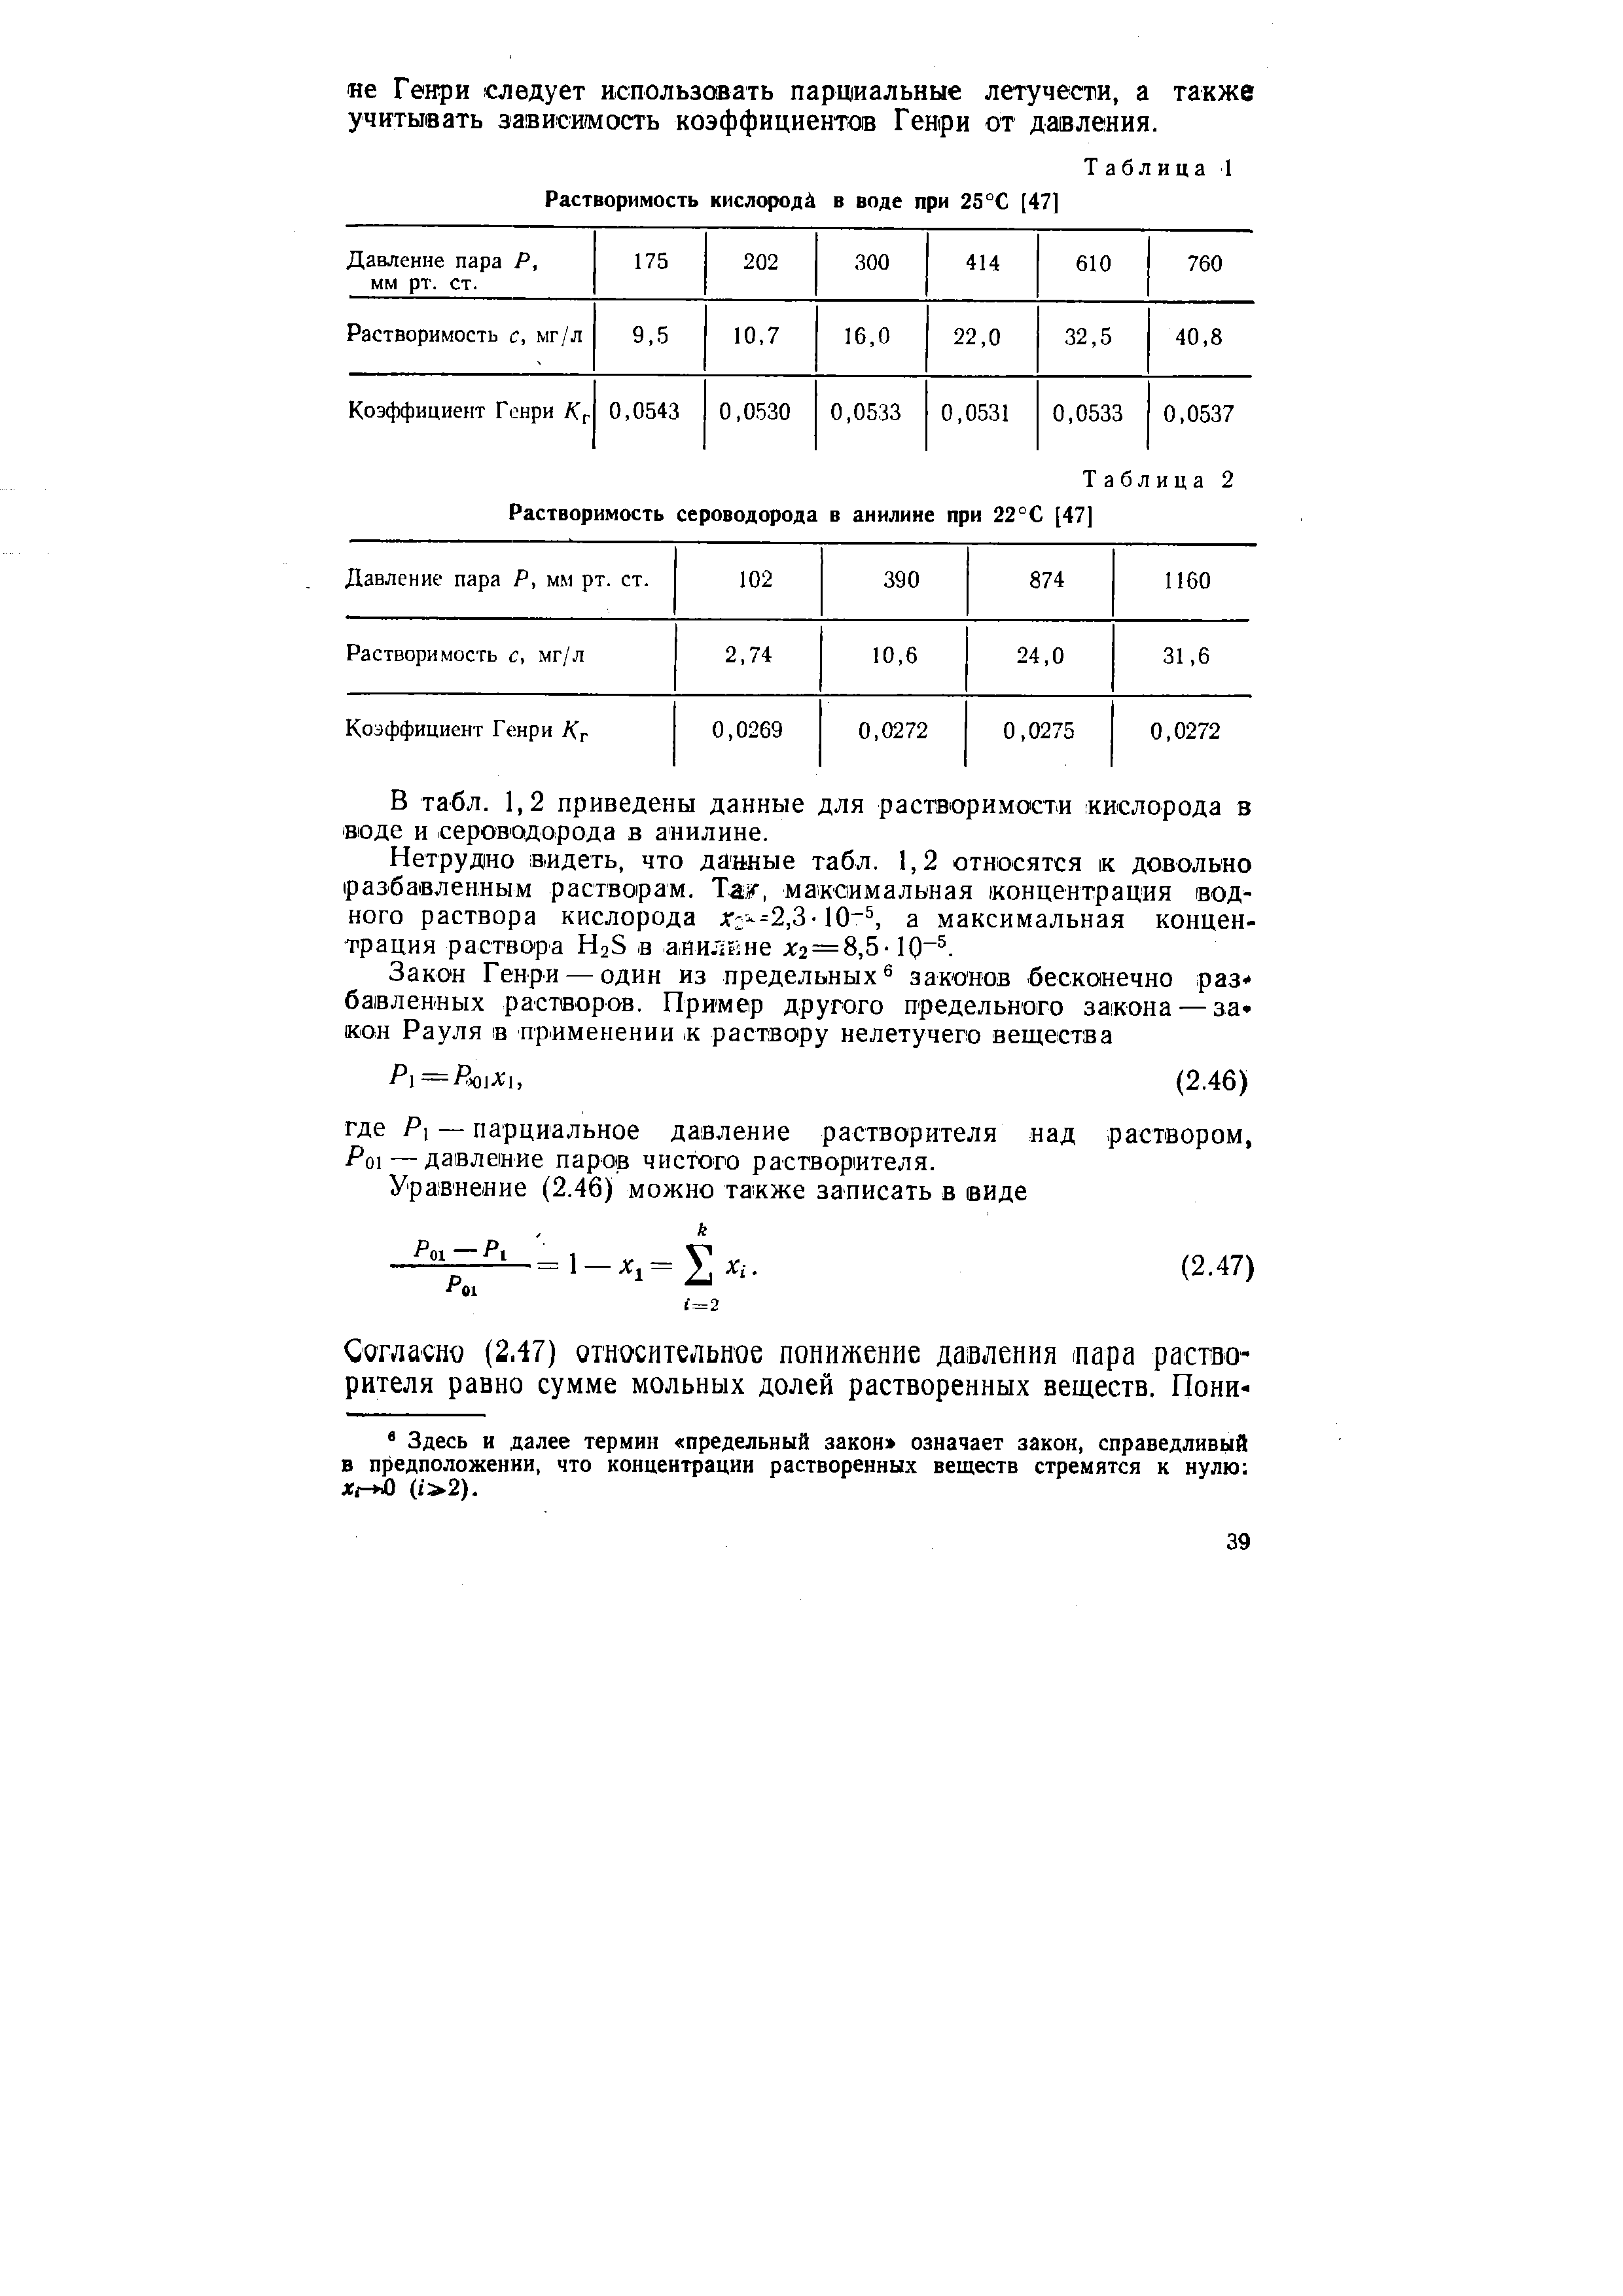 Таблица 2 Растворимость сероводорода в анилине при 22°С [47]
